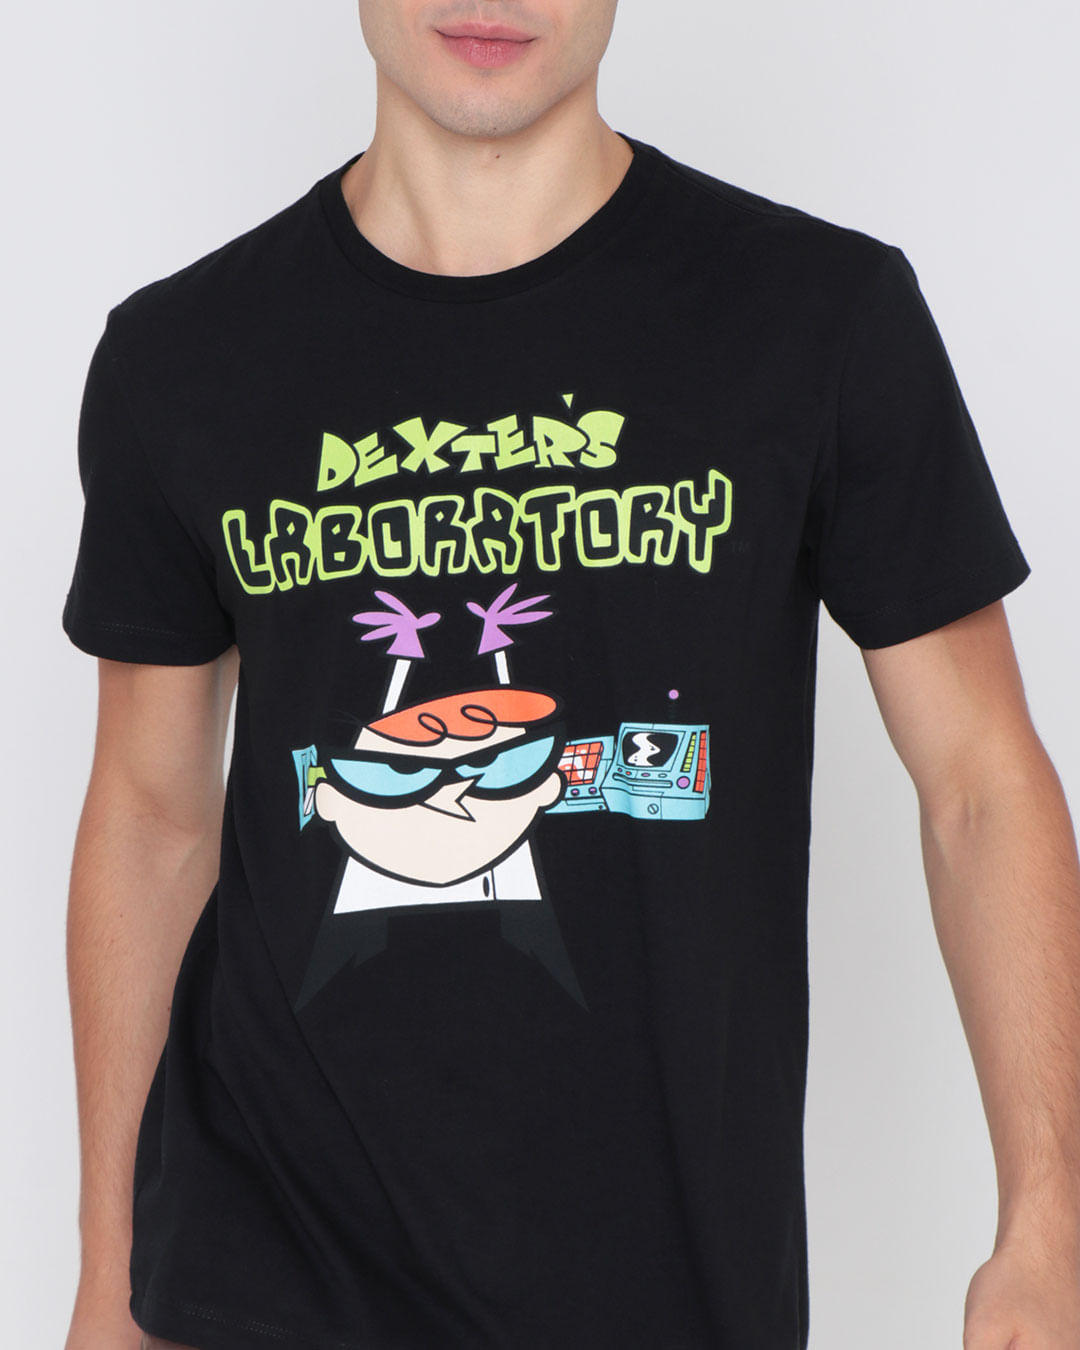 Camiseta-Masculina-Laboratorio-Dexter-Cartoon-Network-Preta